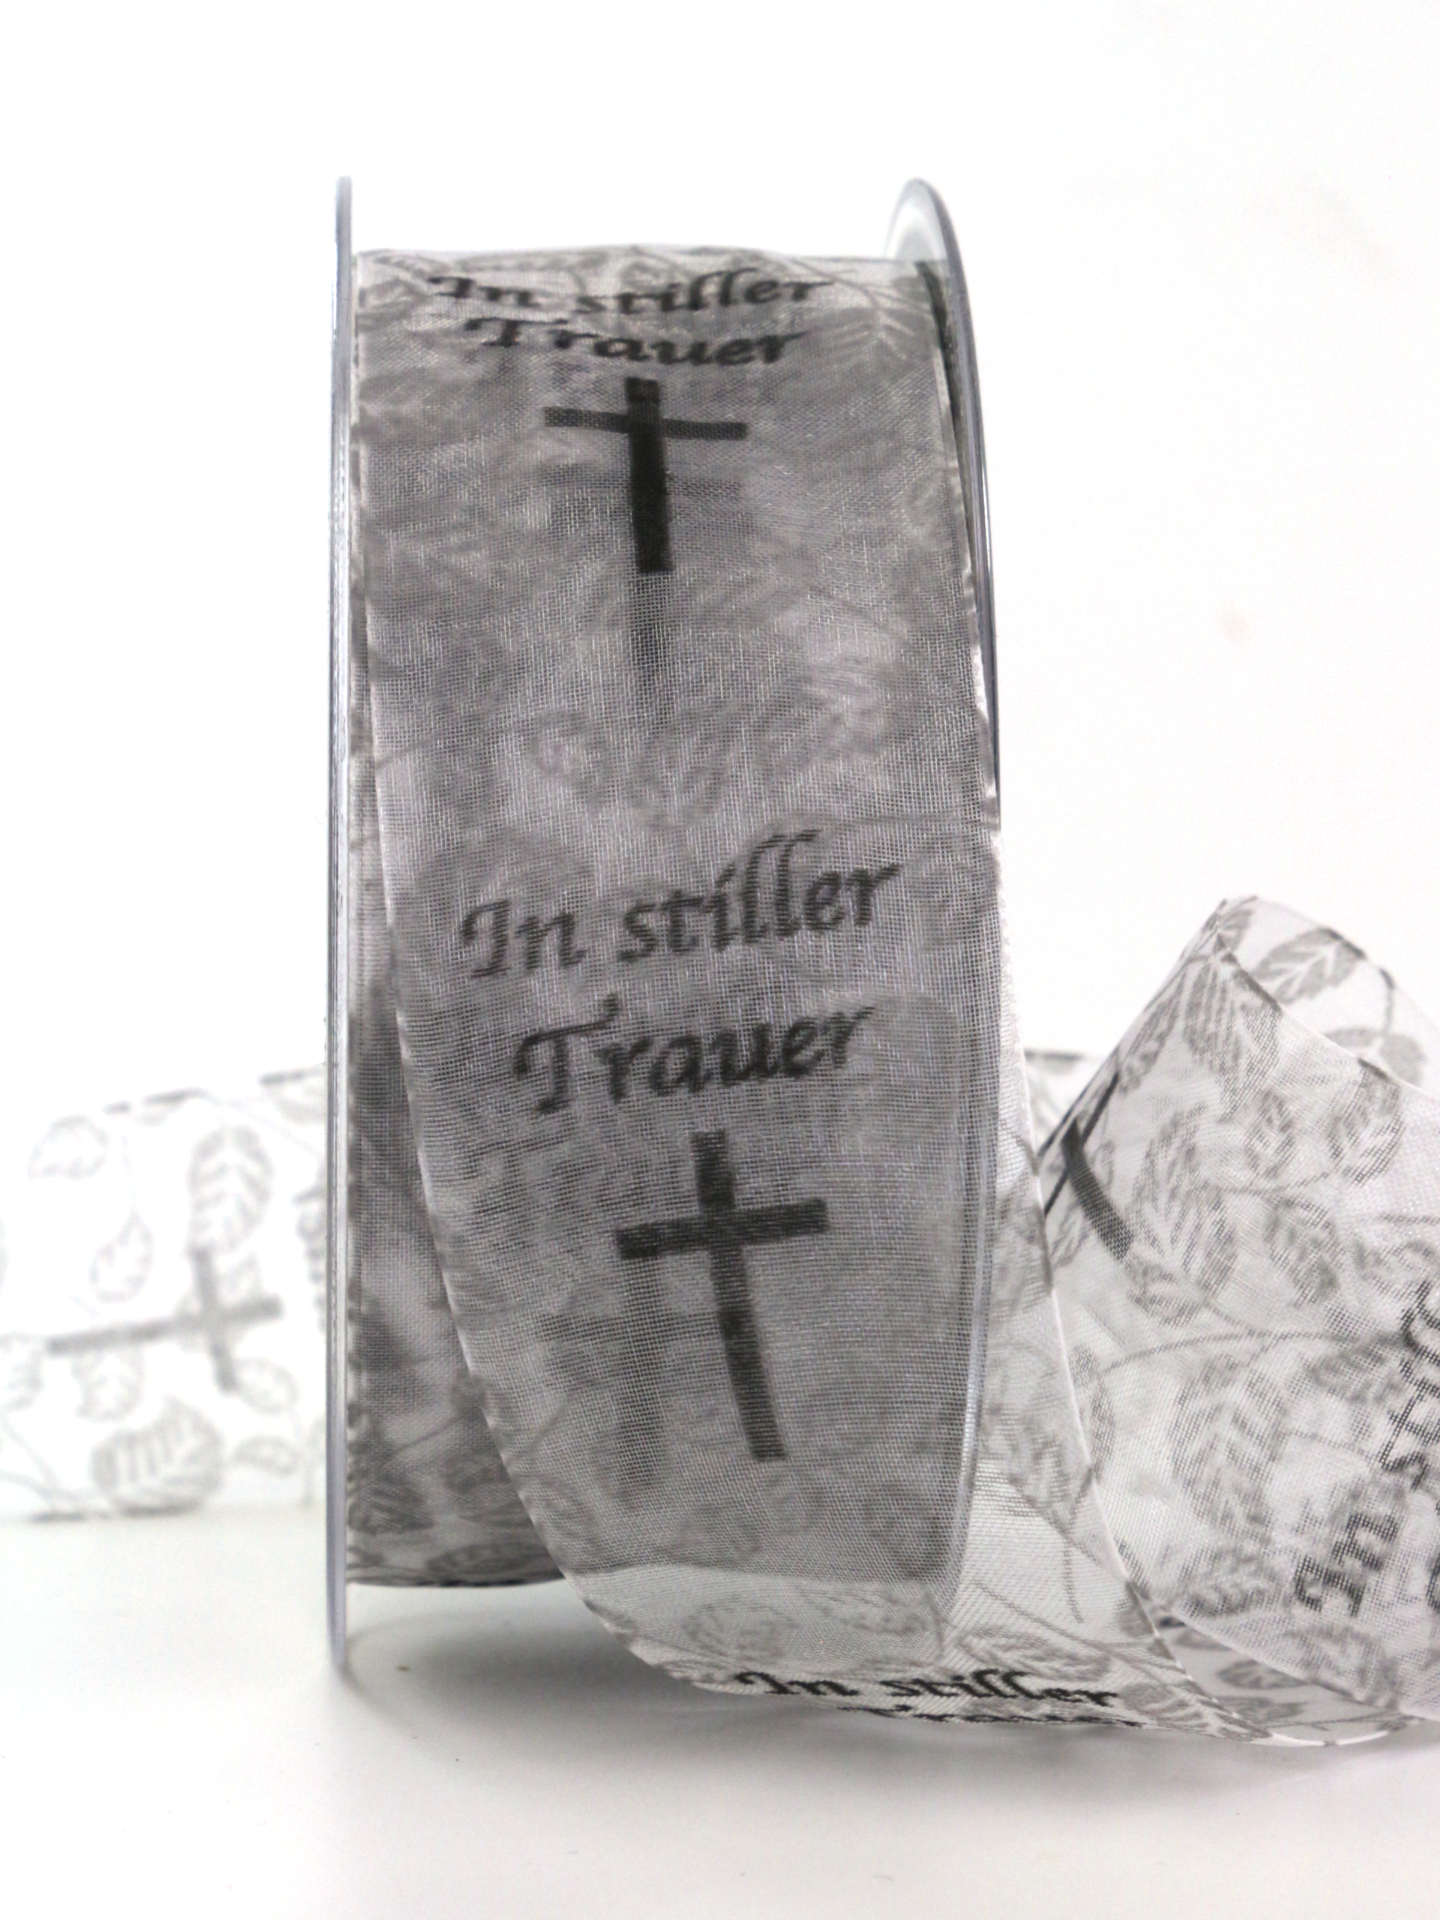 Trauerflor In stiller Trauer, grau, 40 mm breit, 20 m Rolle - geschenkband, geschenkband-fuer-anlaesse, anlasse, trauerband